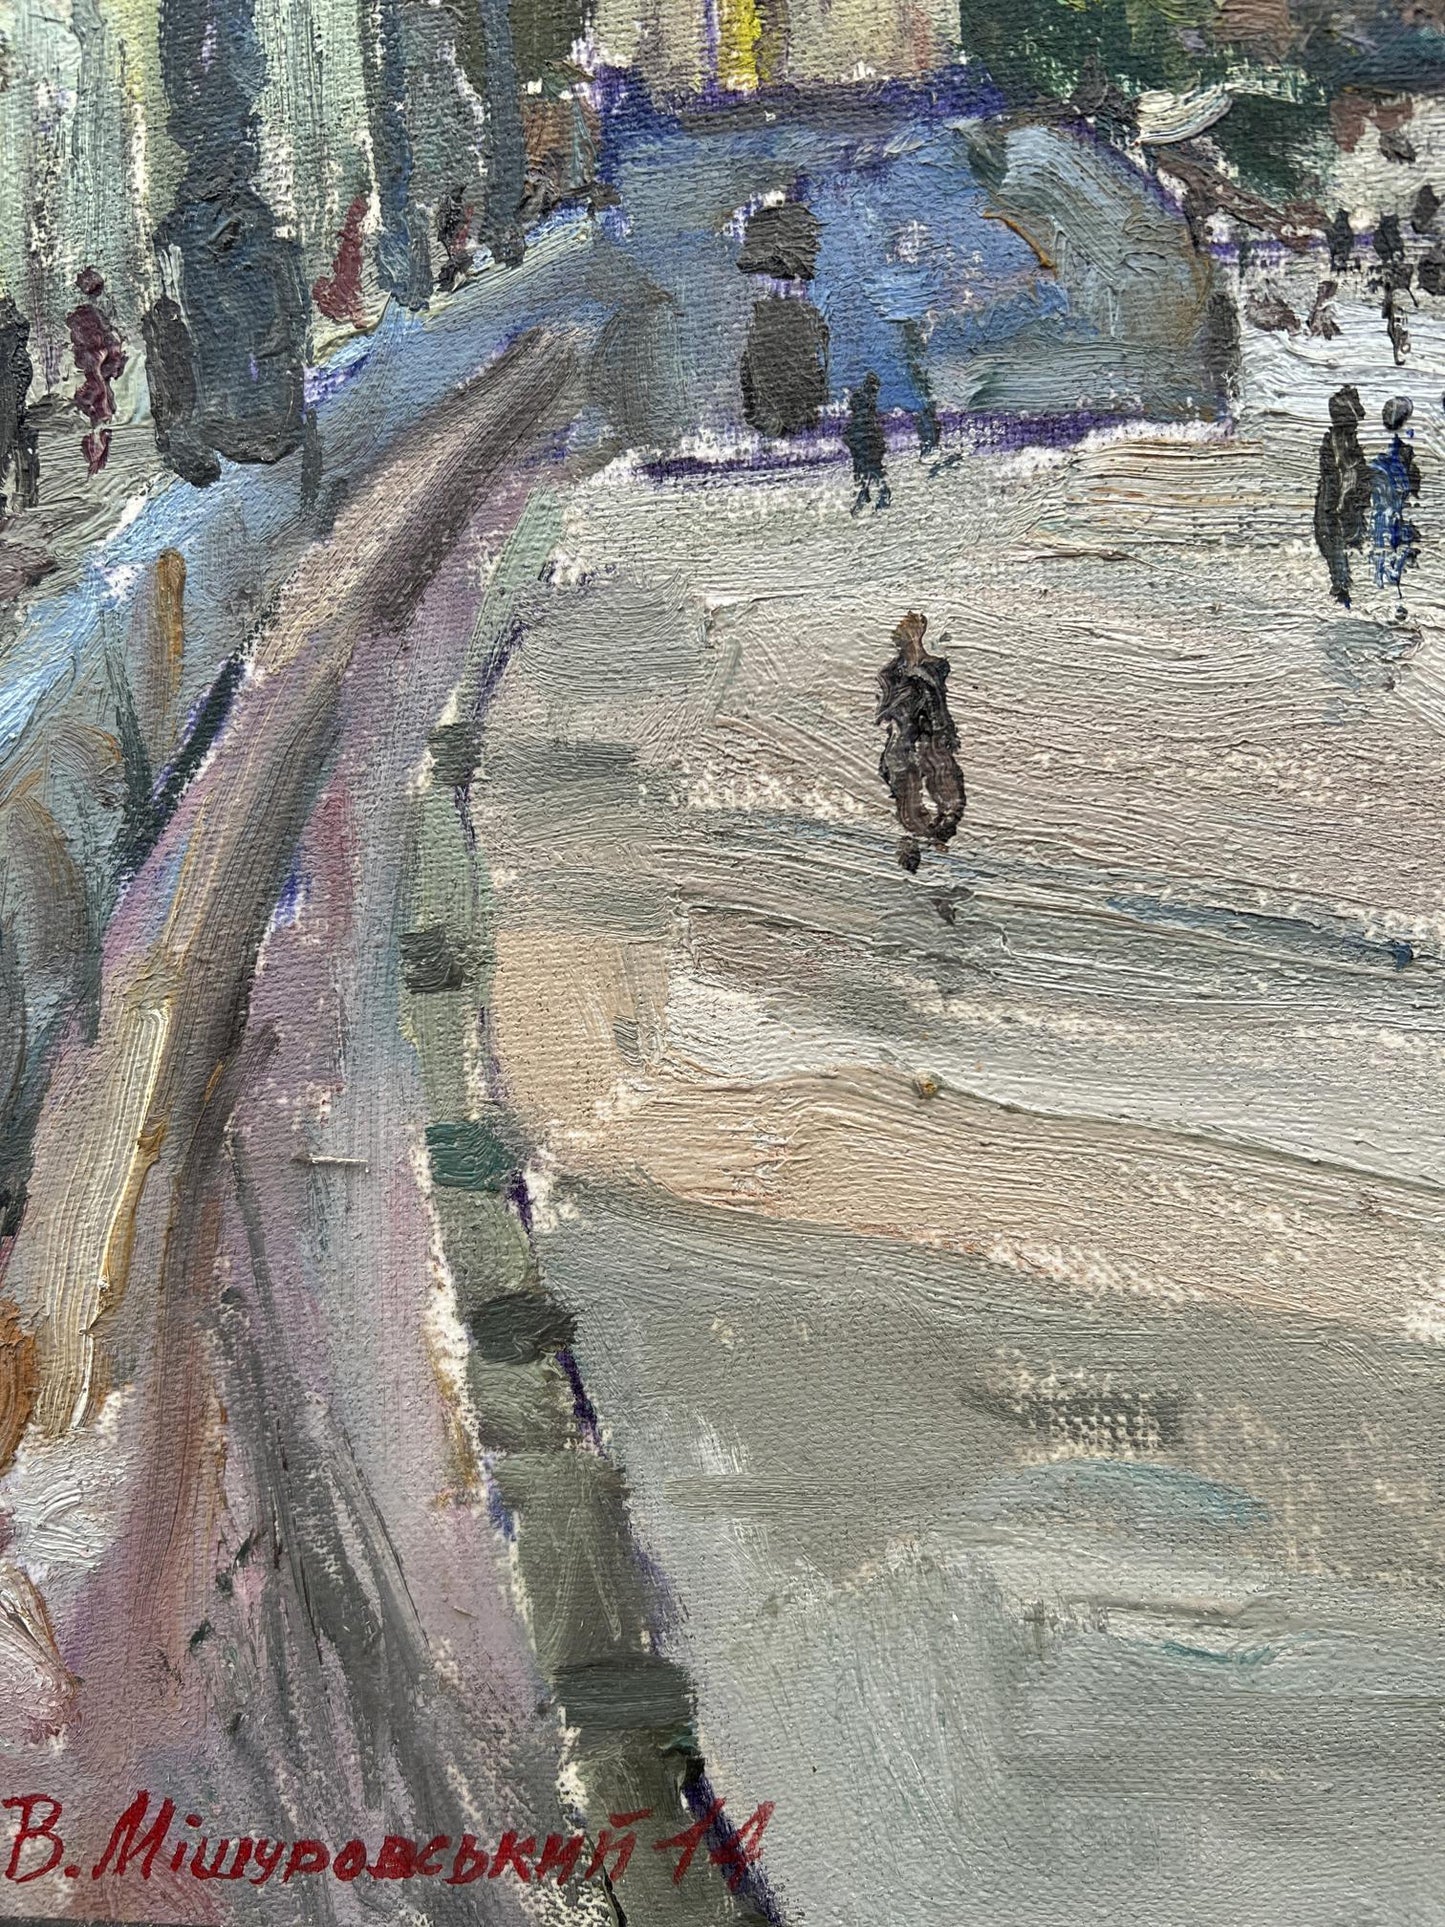 Oil painting Embankment of the city V. Mishurovsky